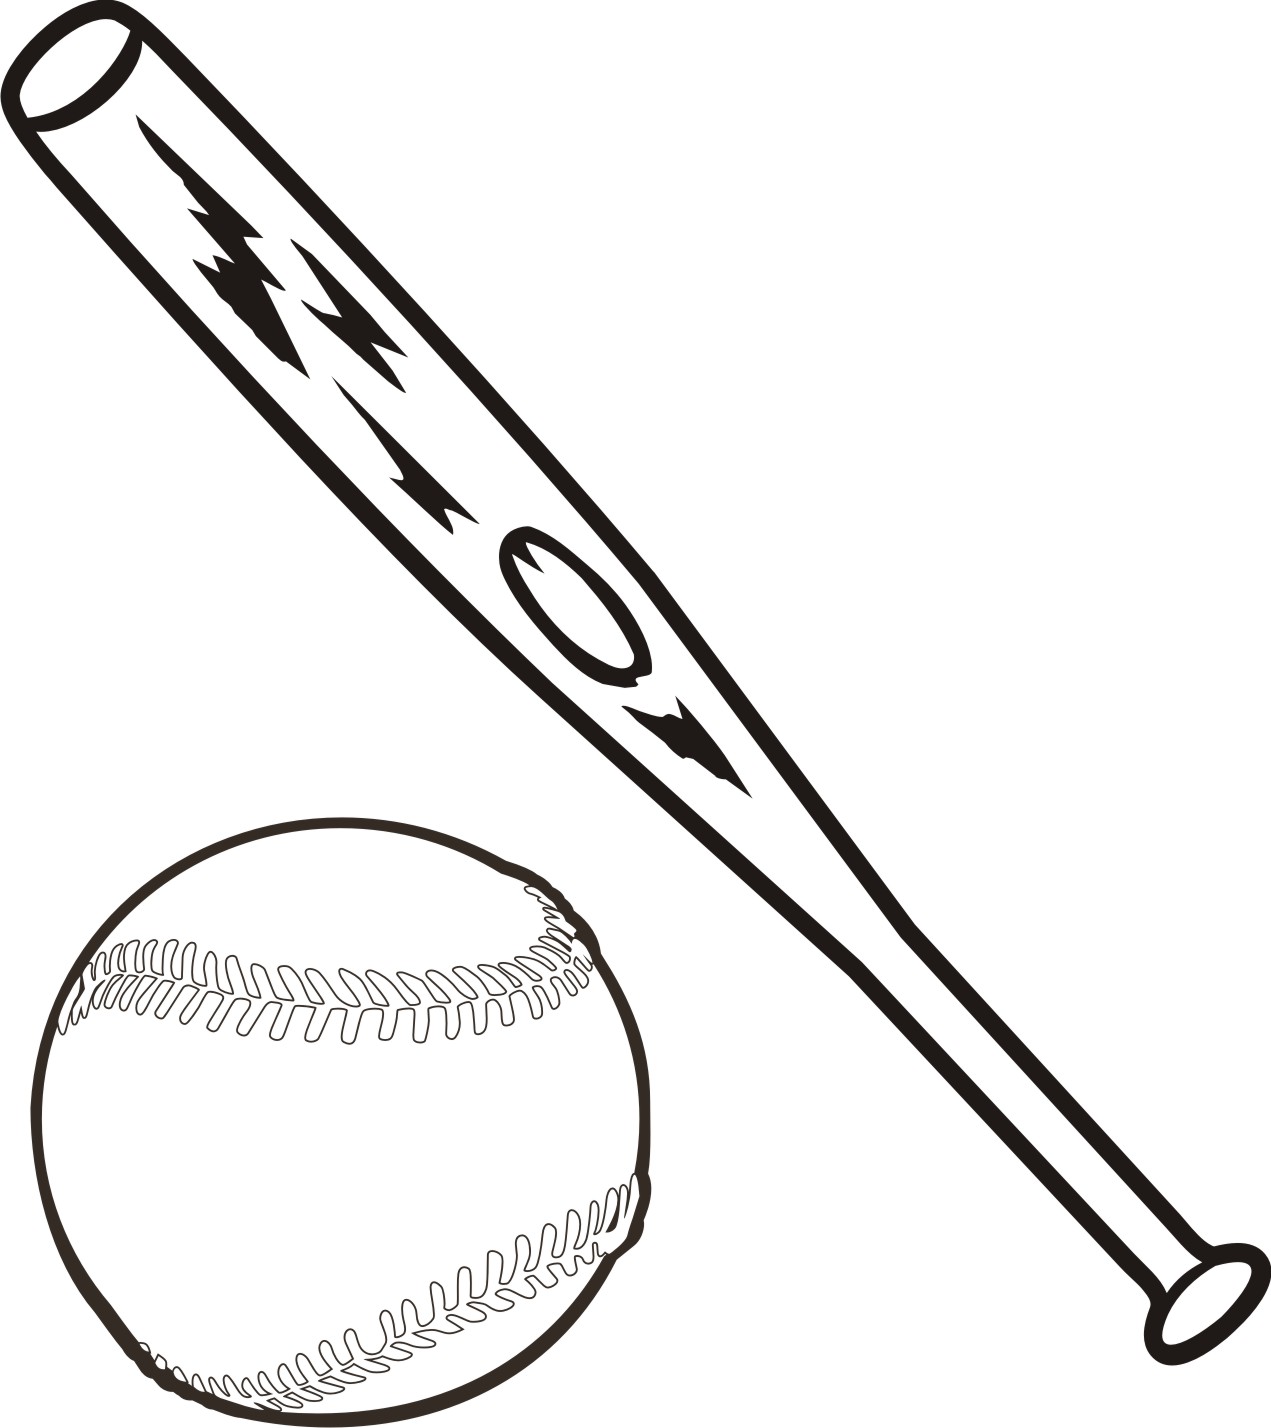 Baseball Bat Clip Artgif Clipart - Free Clip Art Images